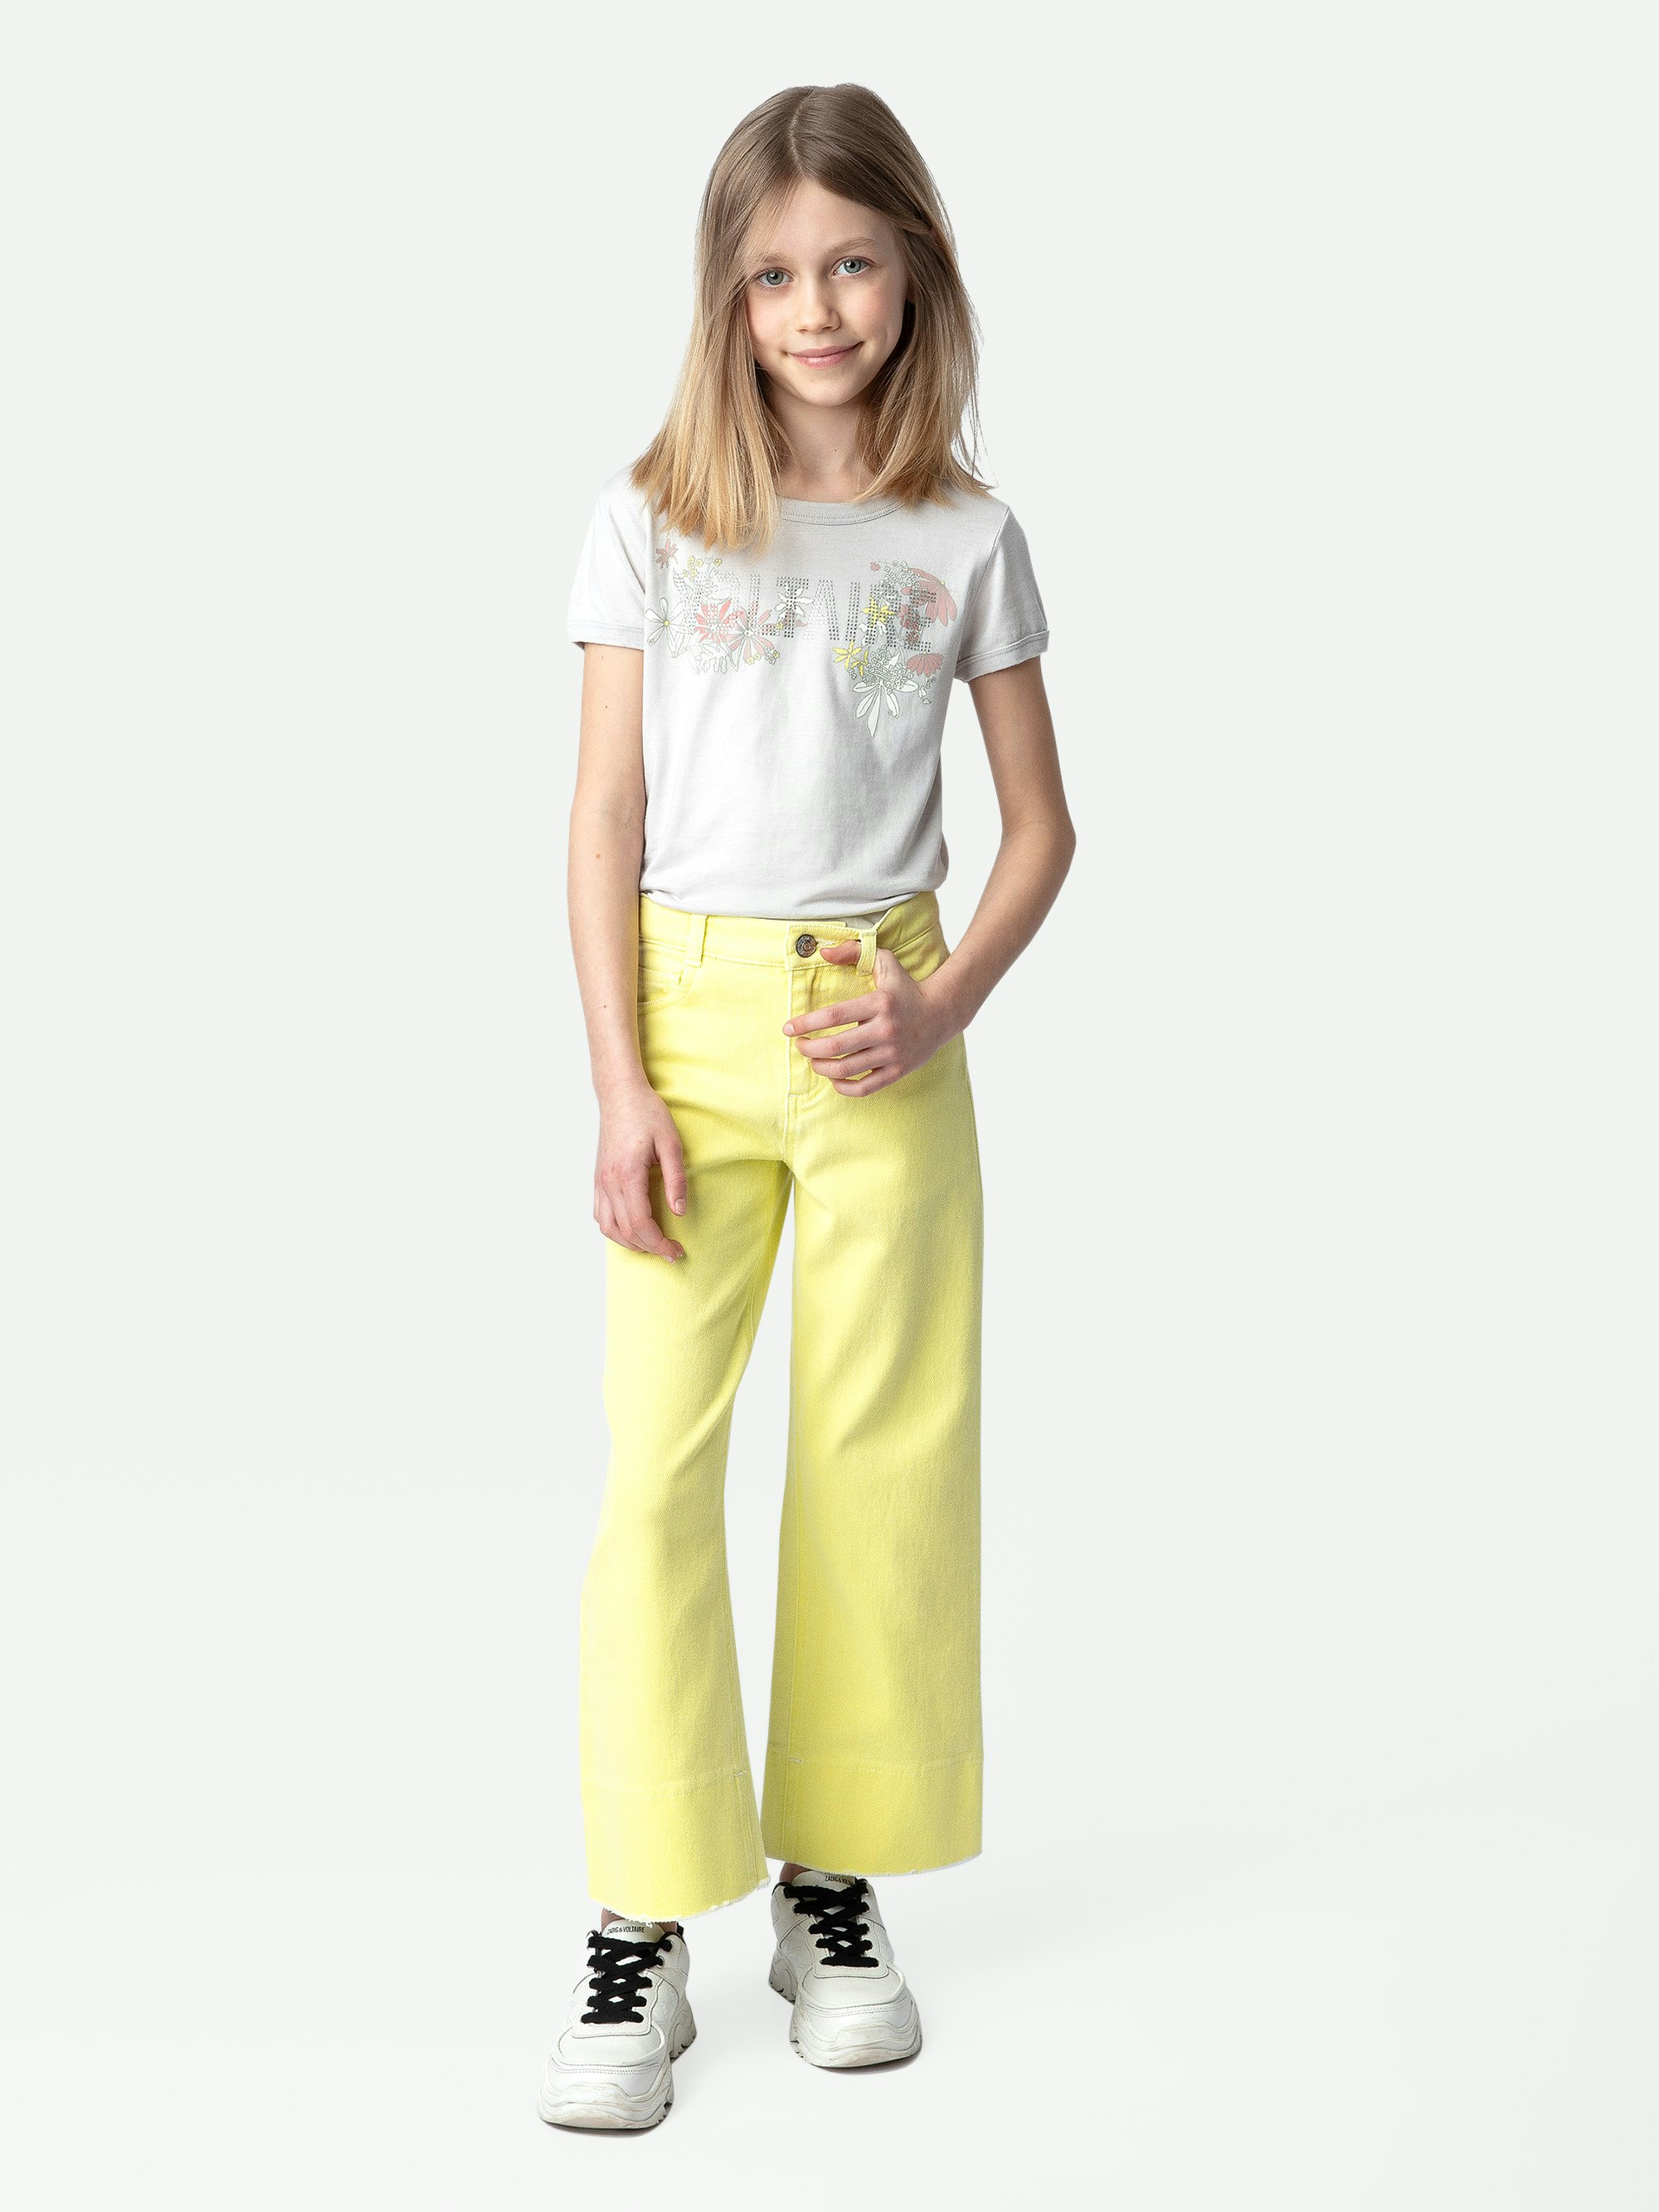 T-Shirt Alister für Mädchen - Graues Mädchen-T-Shirt mit kurzen Ärmeln aus Baumwolljersey mit Illustration.